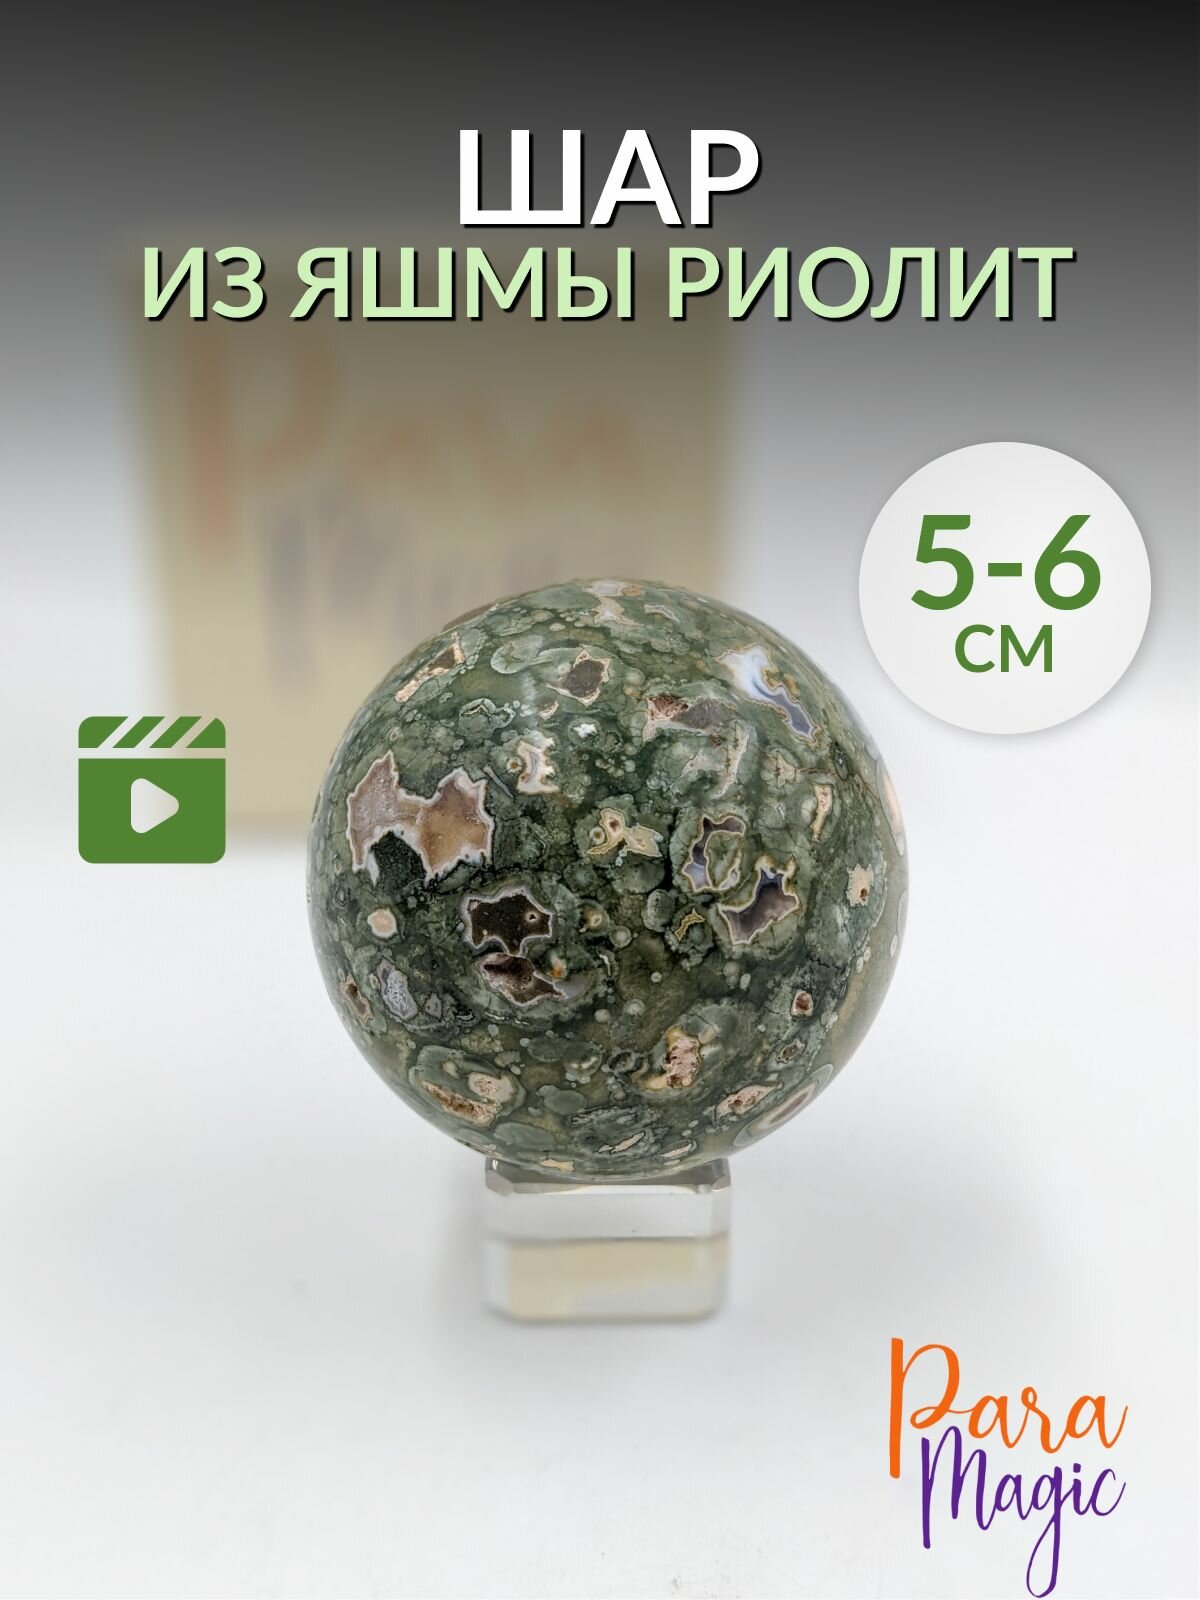 Шар Яшма Риолит, натуральный камень, размер: 5-6 см.